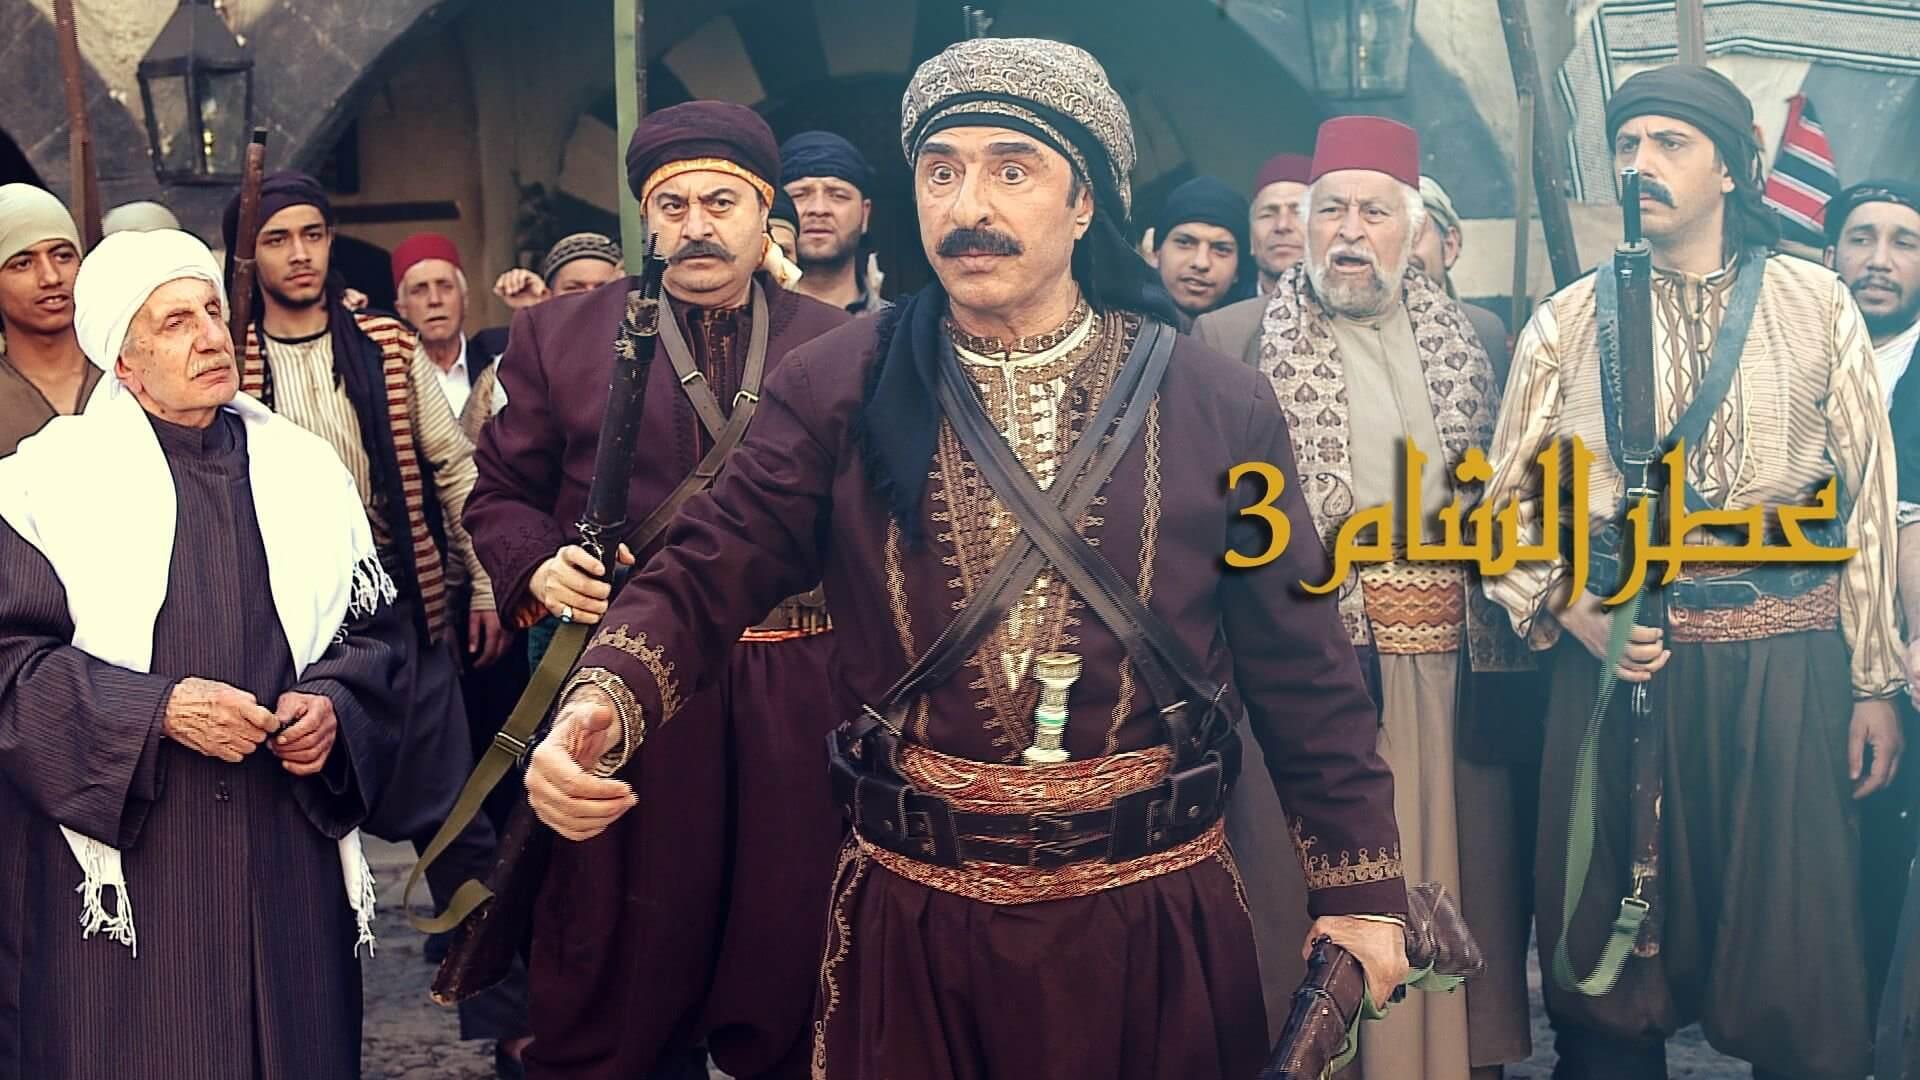 مسلسل عطر الشام الجزء 3 الحلقة 1 الأولى